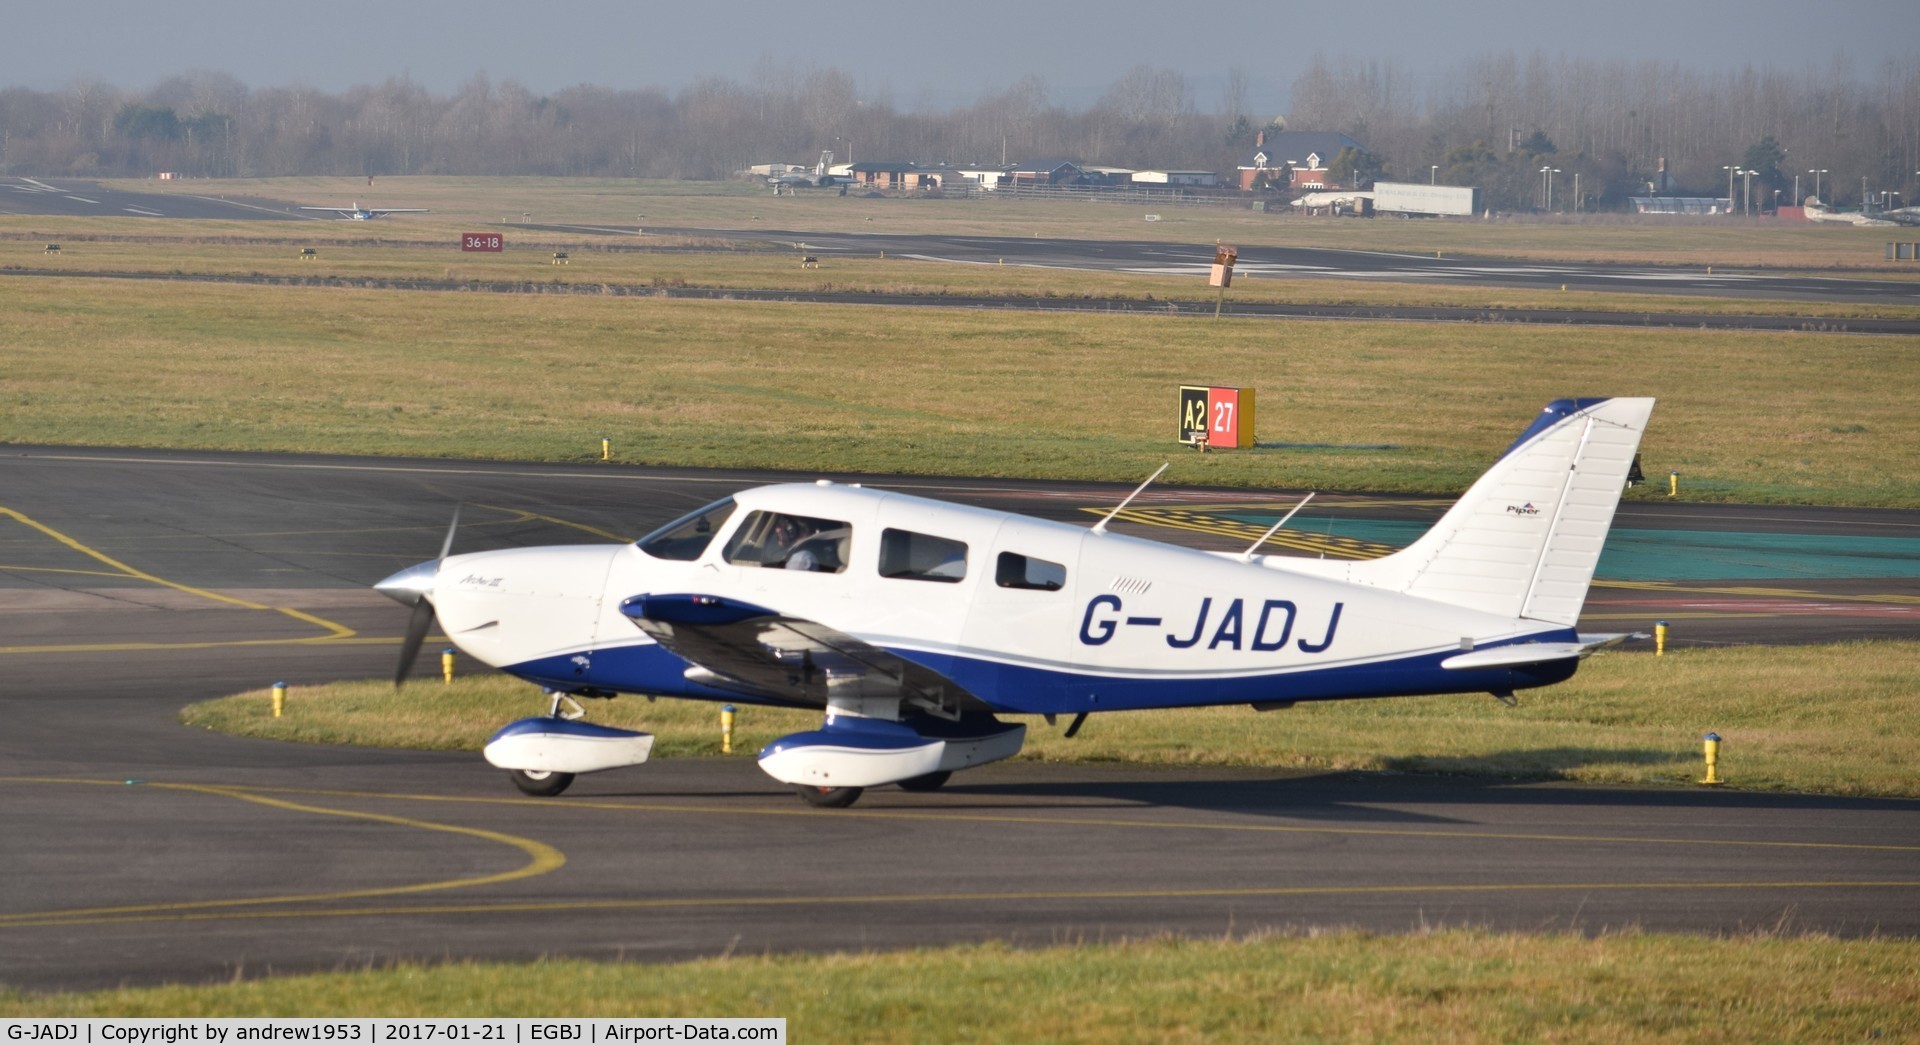 G-JADJ, 1995 Piper PA-28-181 Cherokee Archer III C/N 2843009, G-JADJ at Gloucestershire Airport.